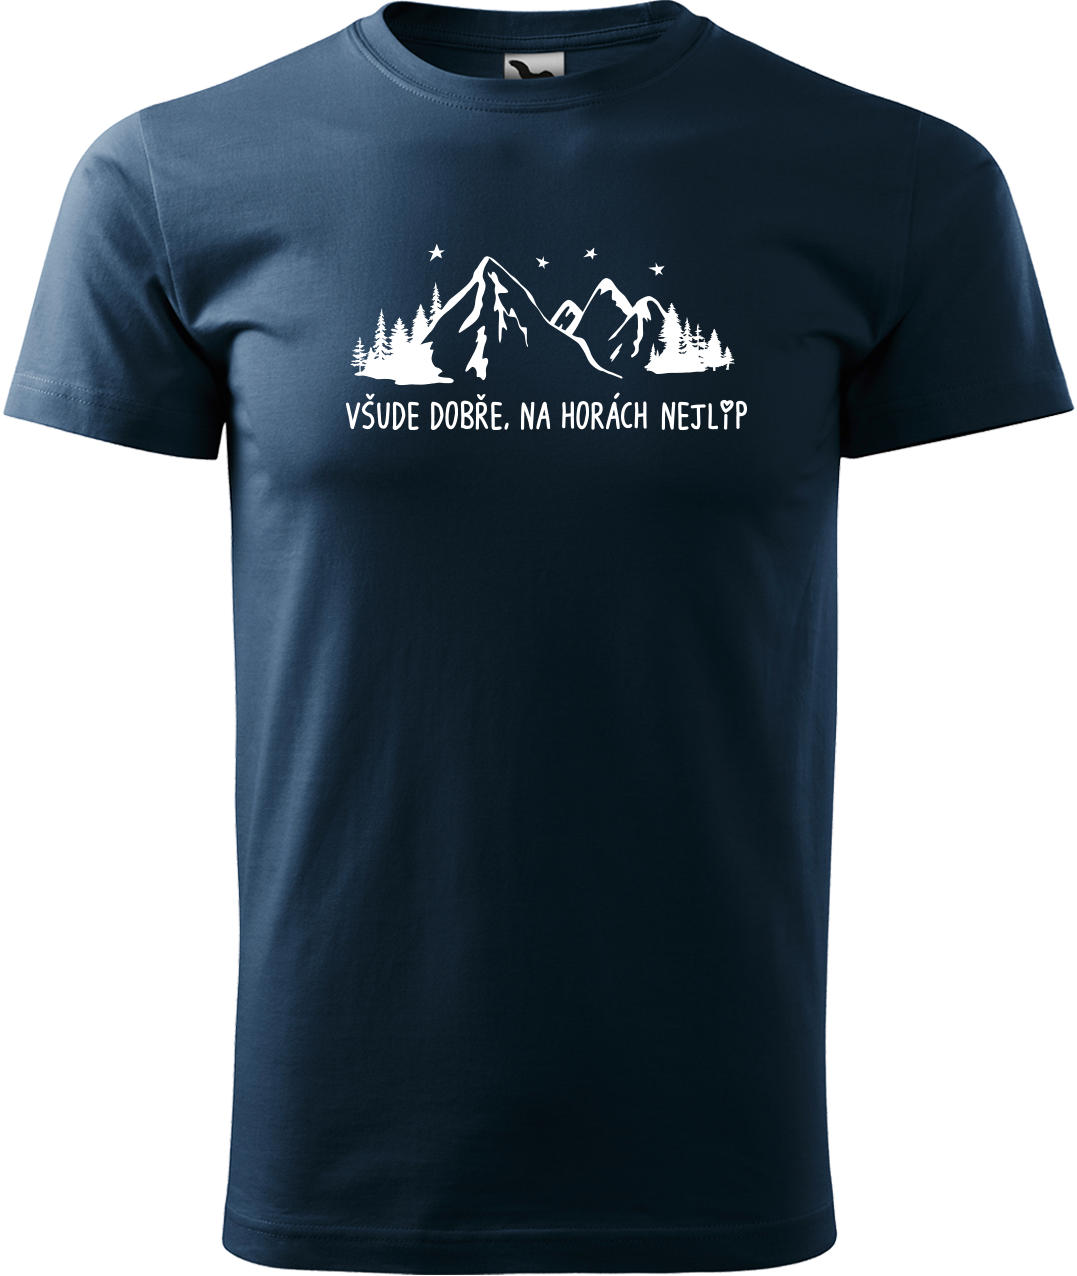 Pánské tričko na hory - Všude dobře, na horách nejlíp Velikost: 4XL, Barva: Námořní modrá (02)